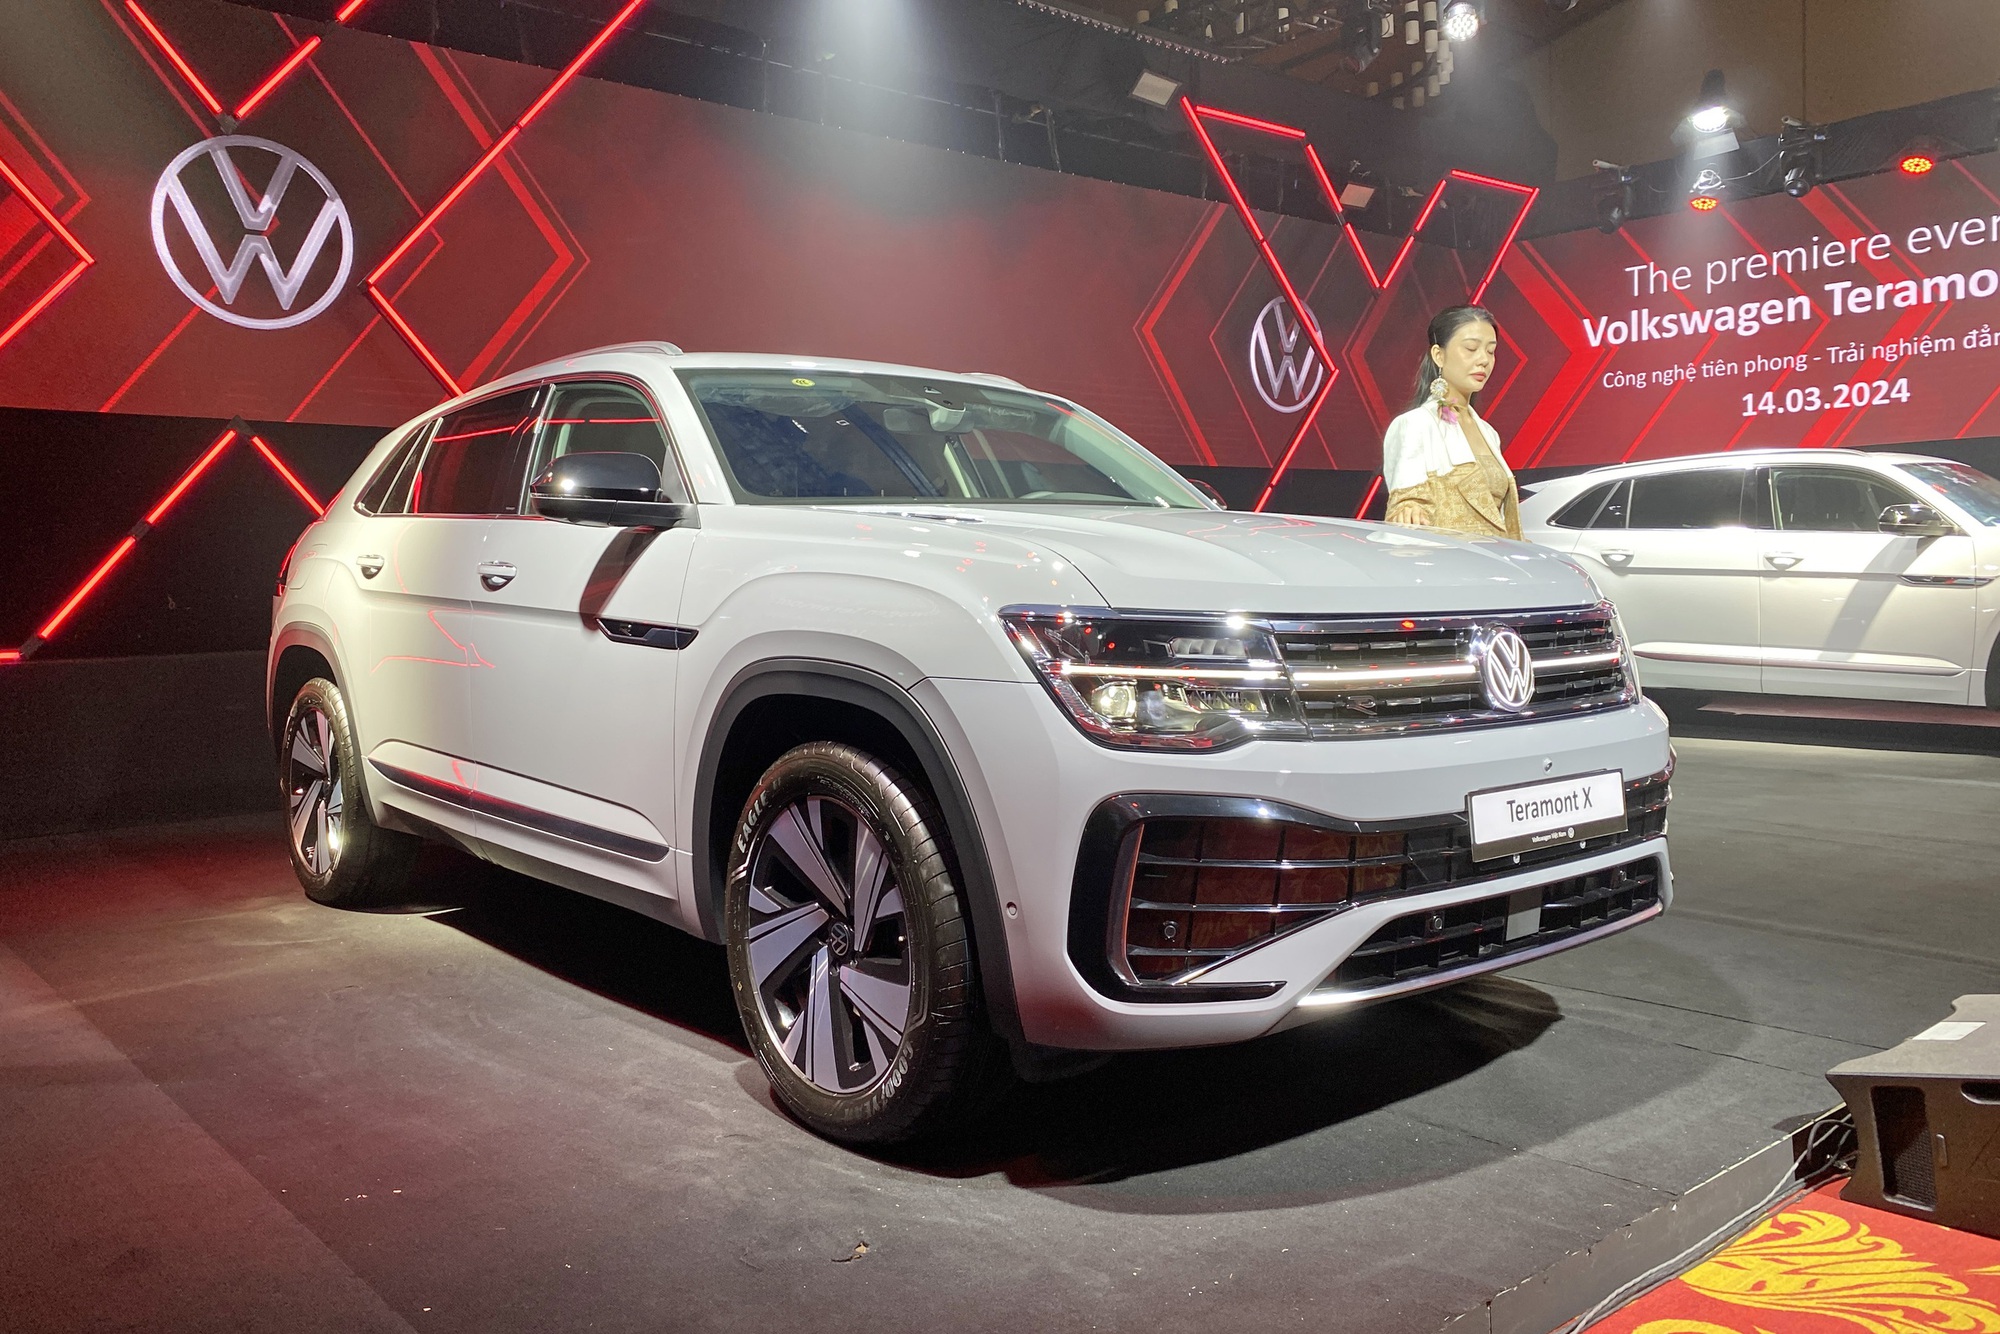 VW Teramont X ra mắt Việt Nam: Giá từ 1,998 tỷ, 2 phiên bản, nhiều công nghệ, đấu Explorer bằng giá rẻ hơn đúng 1 triệu đồng- Ảnh 2.